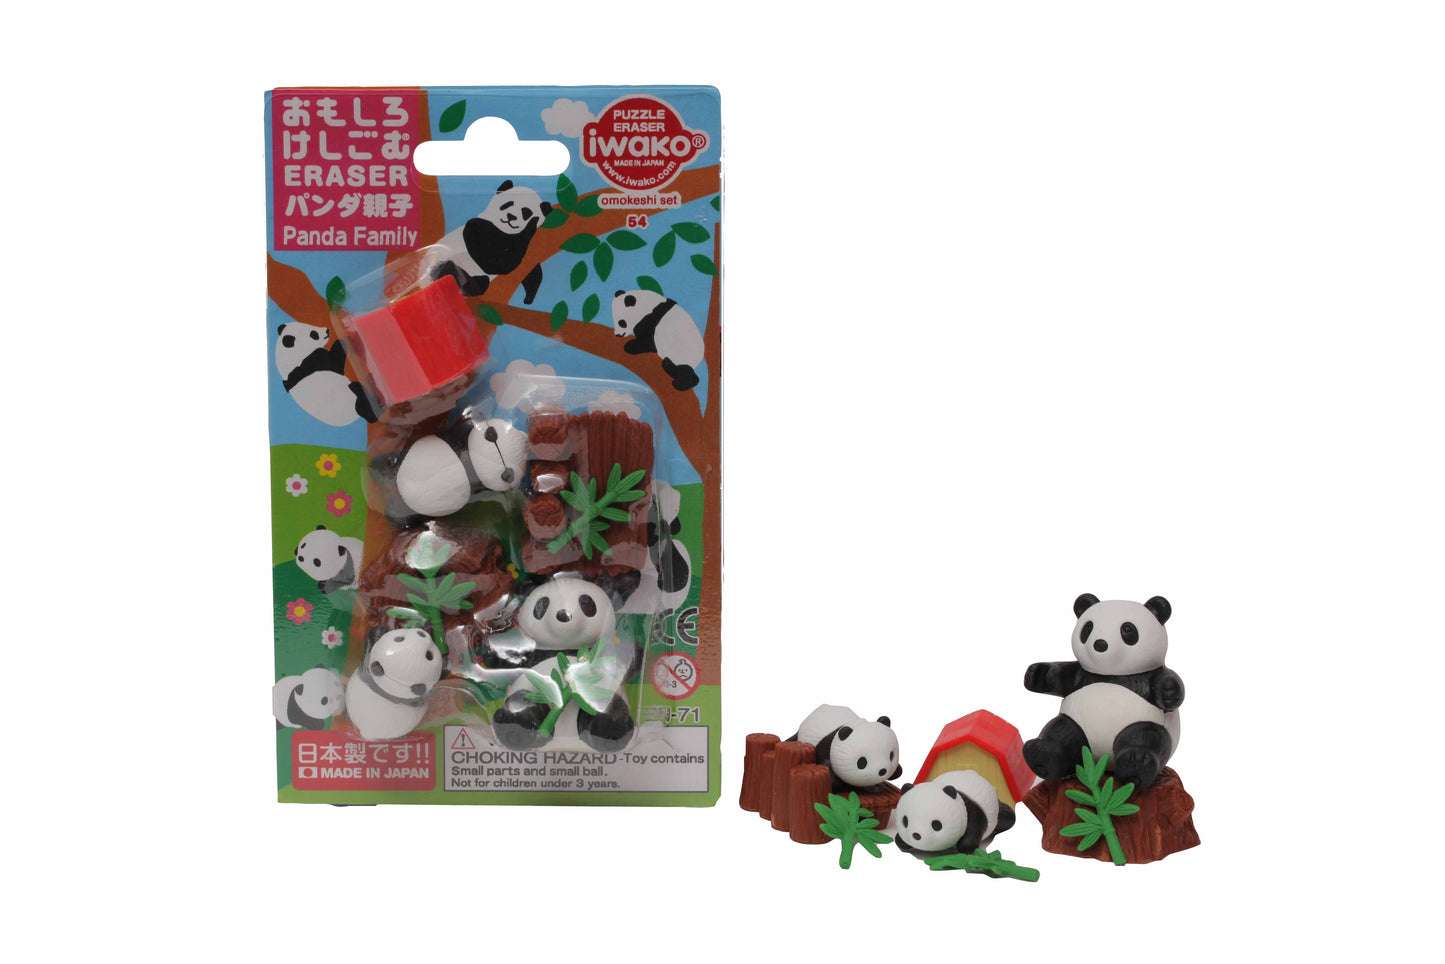 Blister Pack "Panda Family" x 10 packs